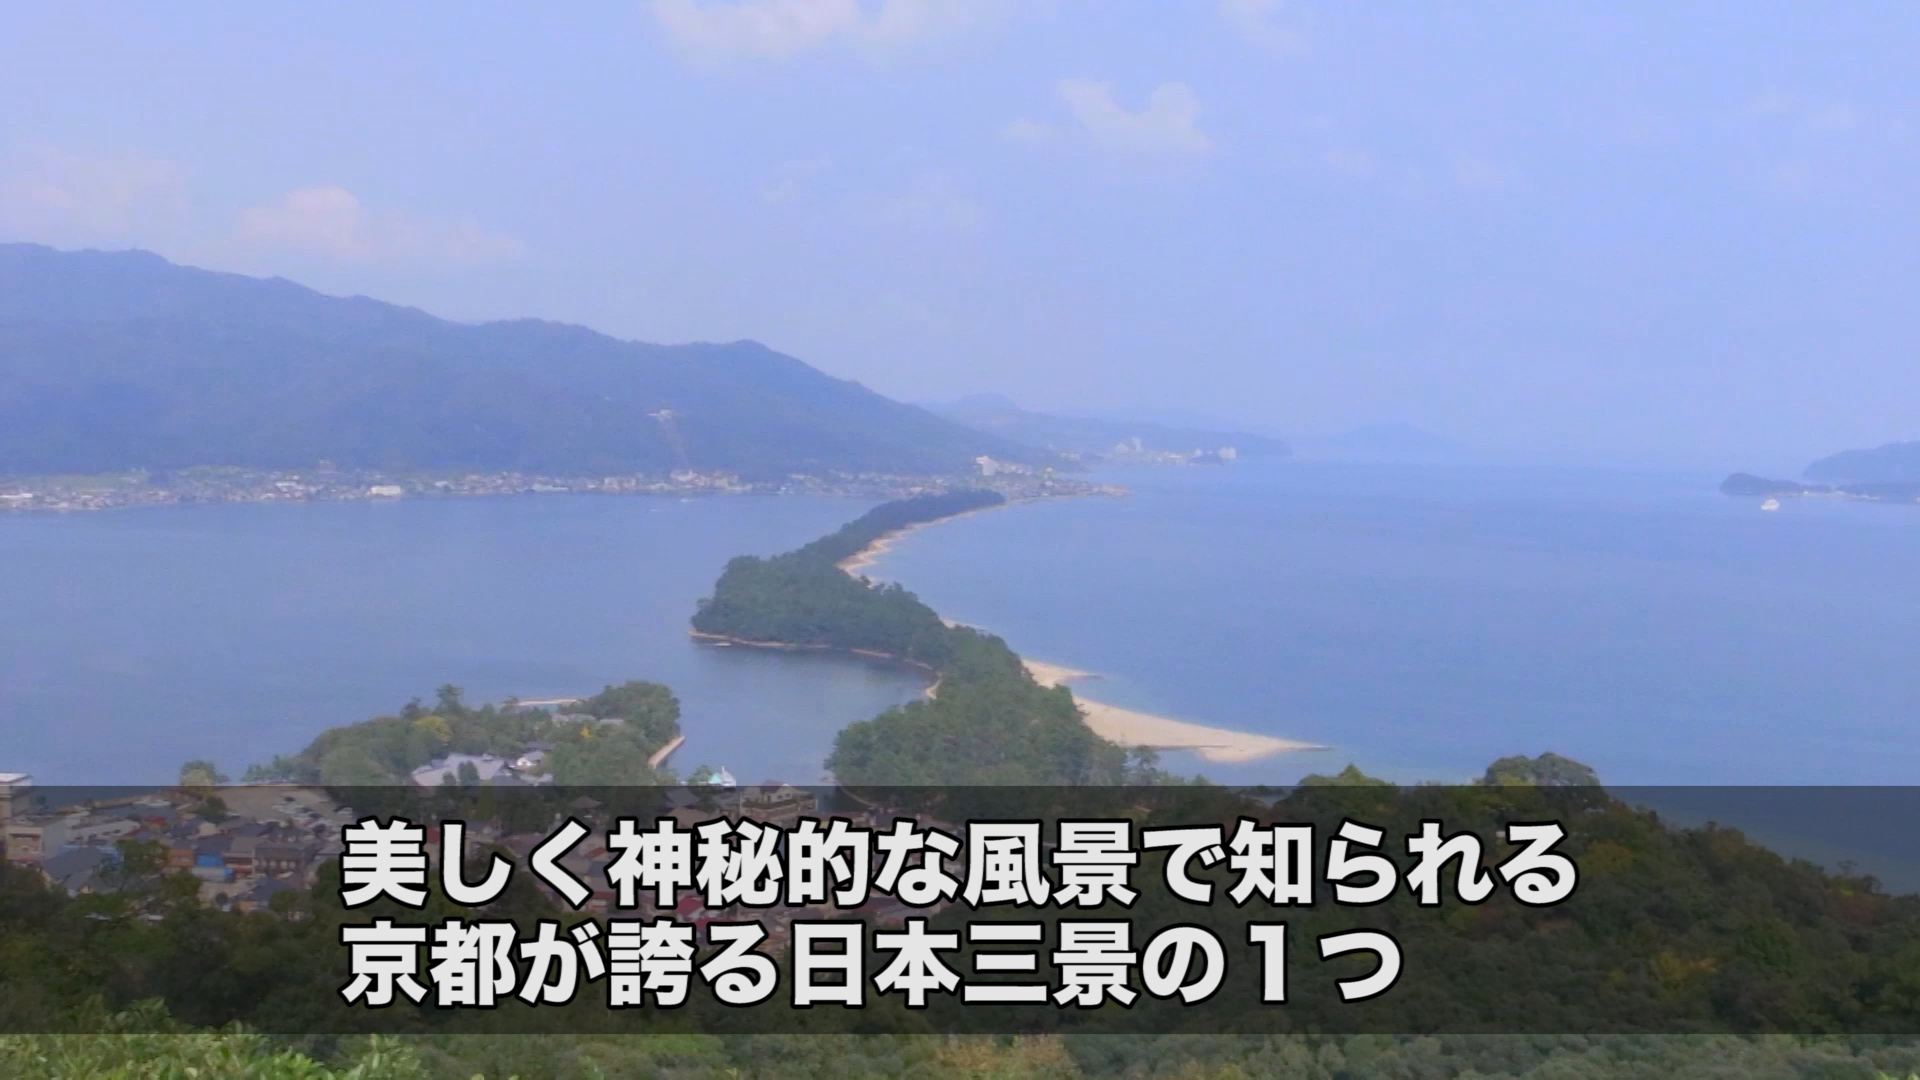 日本三景の1つ天橋立の影にある問題 ソーシャル イノベーション ニュース